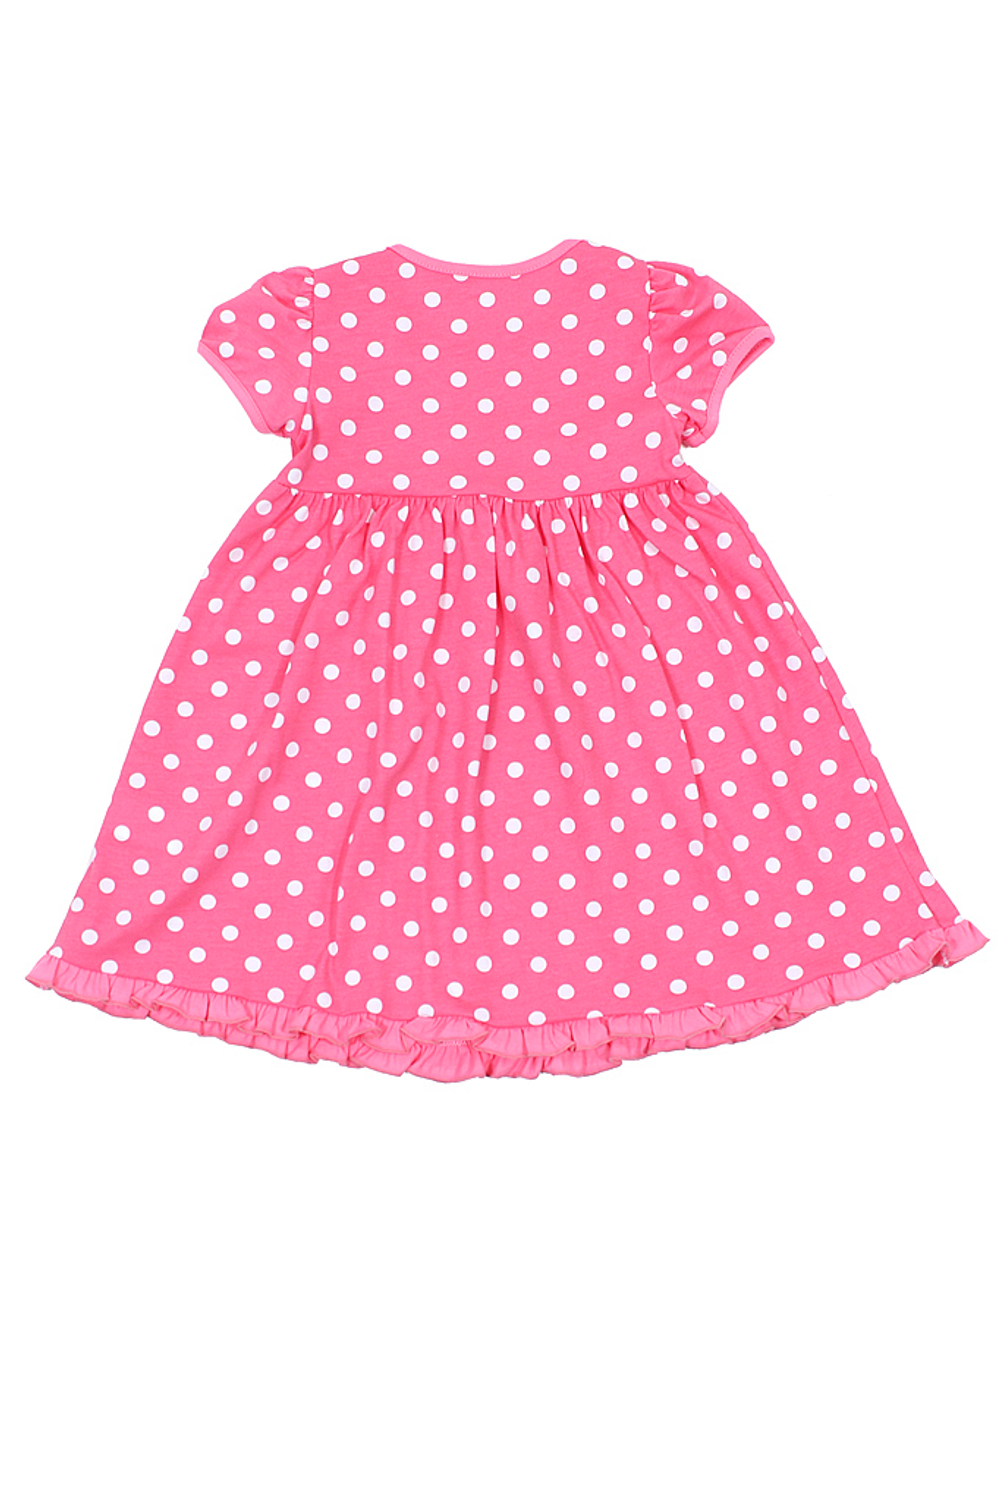 Basia Л365 Платье для девочки розовый